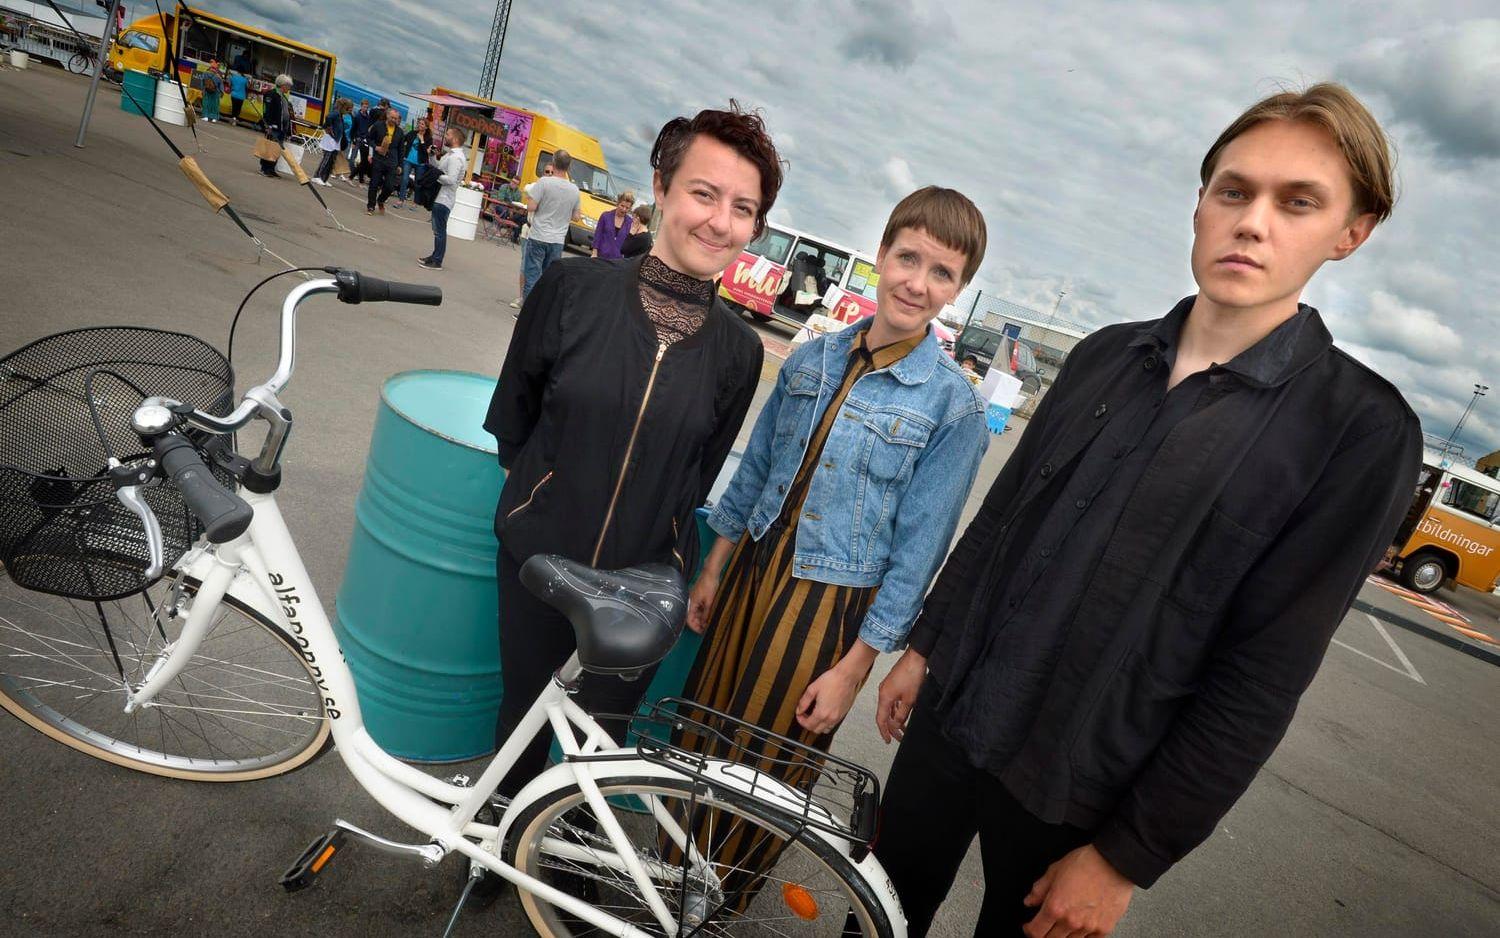 CYKELPROJEKT: Karina Sarkissova, Sebastian Dahlqvist och Karin Auran Frankenstein ligger bakom projektet Alfaponny  som handlar om att rusta upp gamla cyklar.